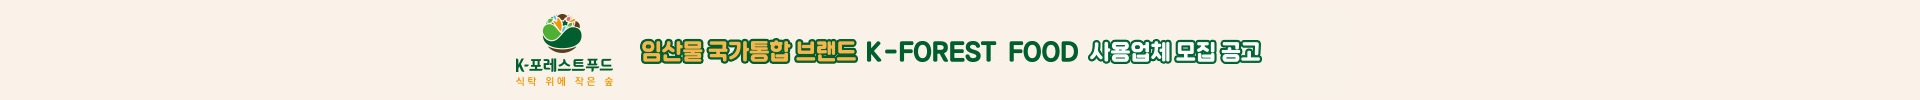 임산물 국가통합 브랜드 K-FOREST FOOD 사용업체 모집 공고